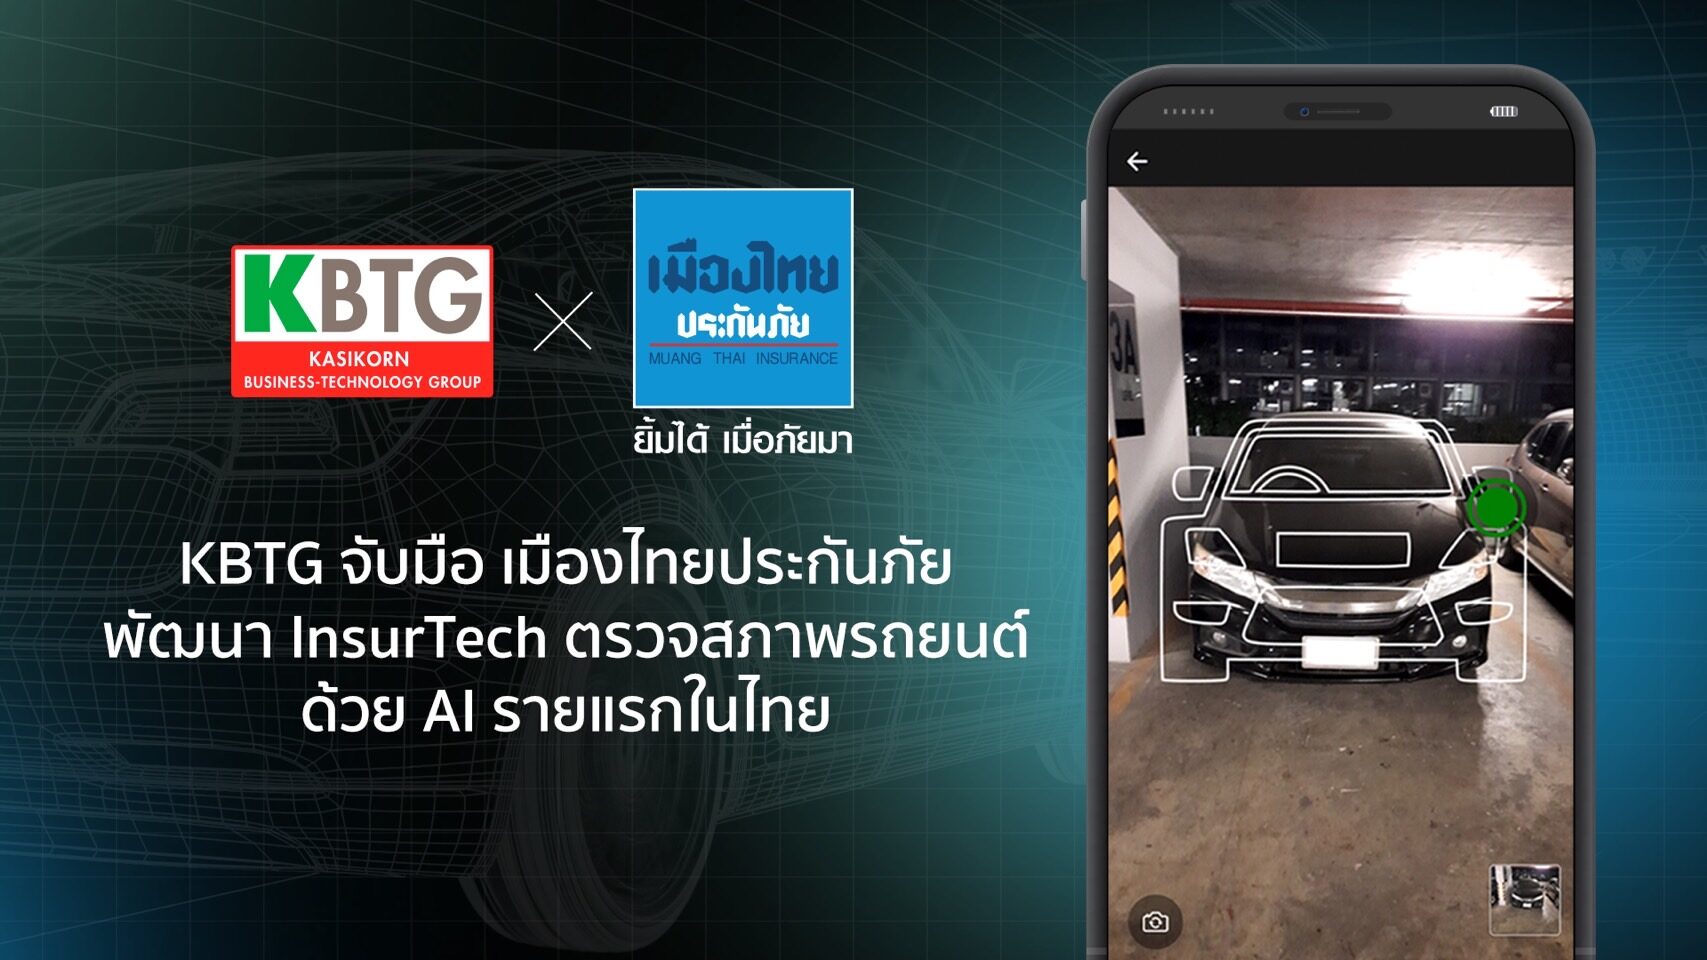 KBTG จับมือ เมืองไทยประกันภัย ตรวจสภาพรถยนต์ด้วย AI รายแรกในไทย